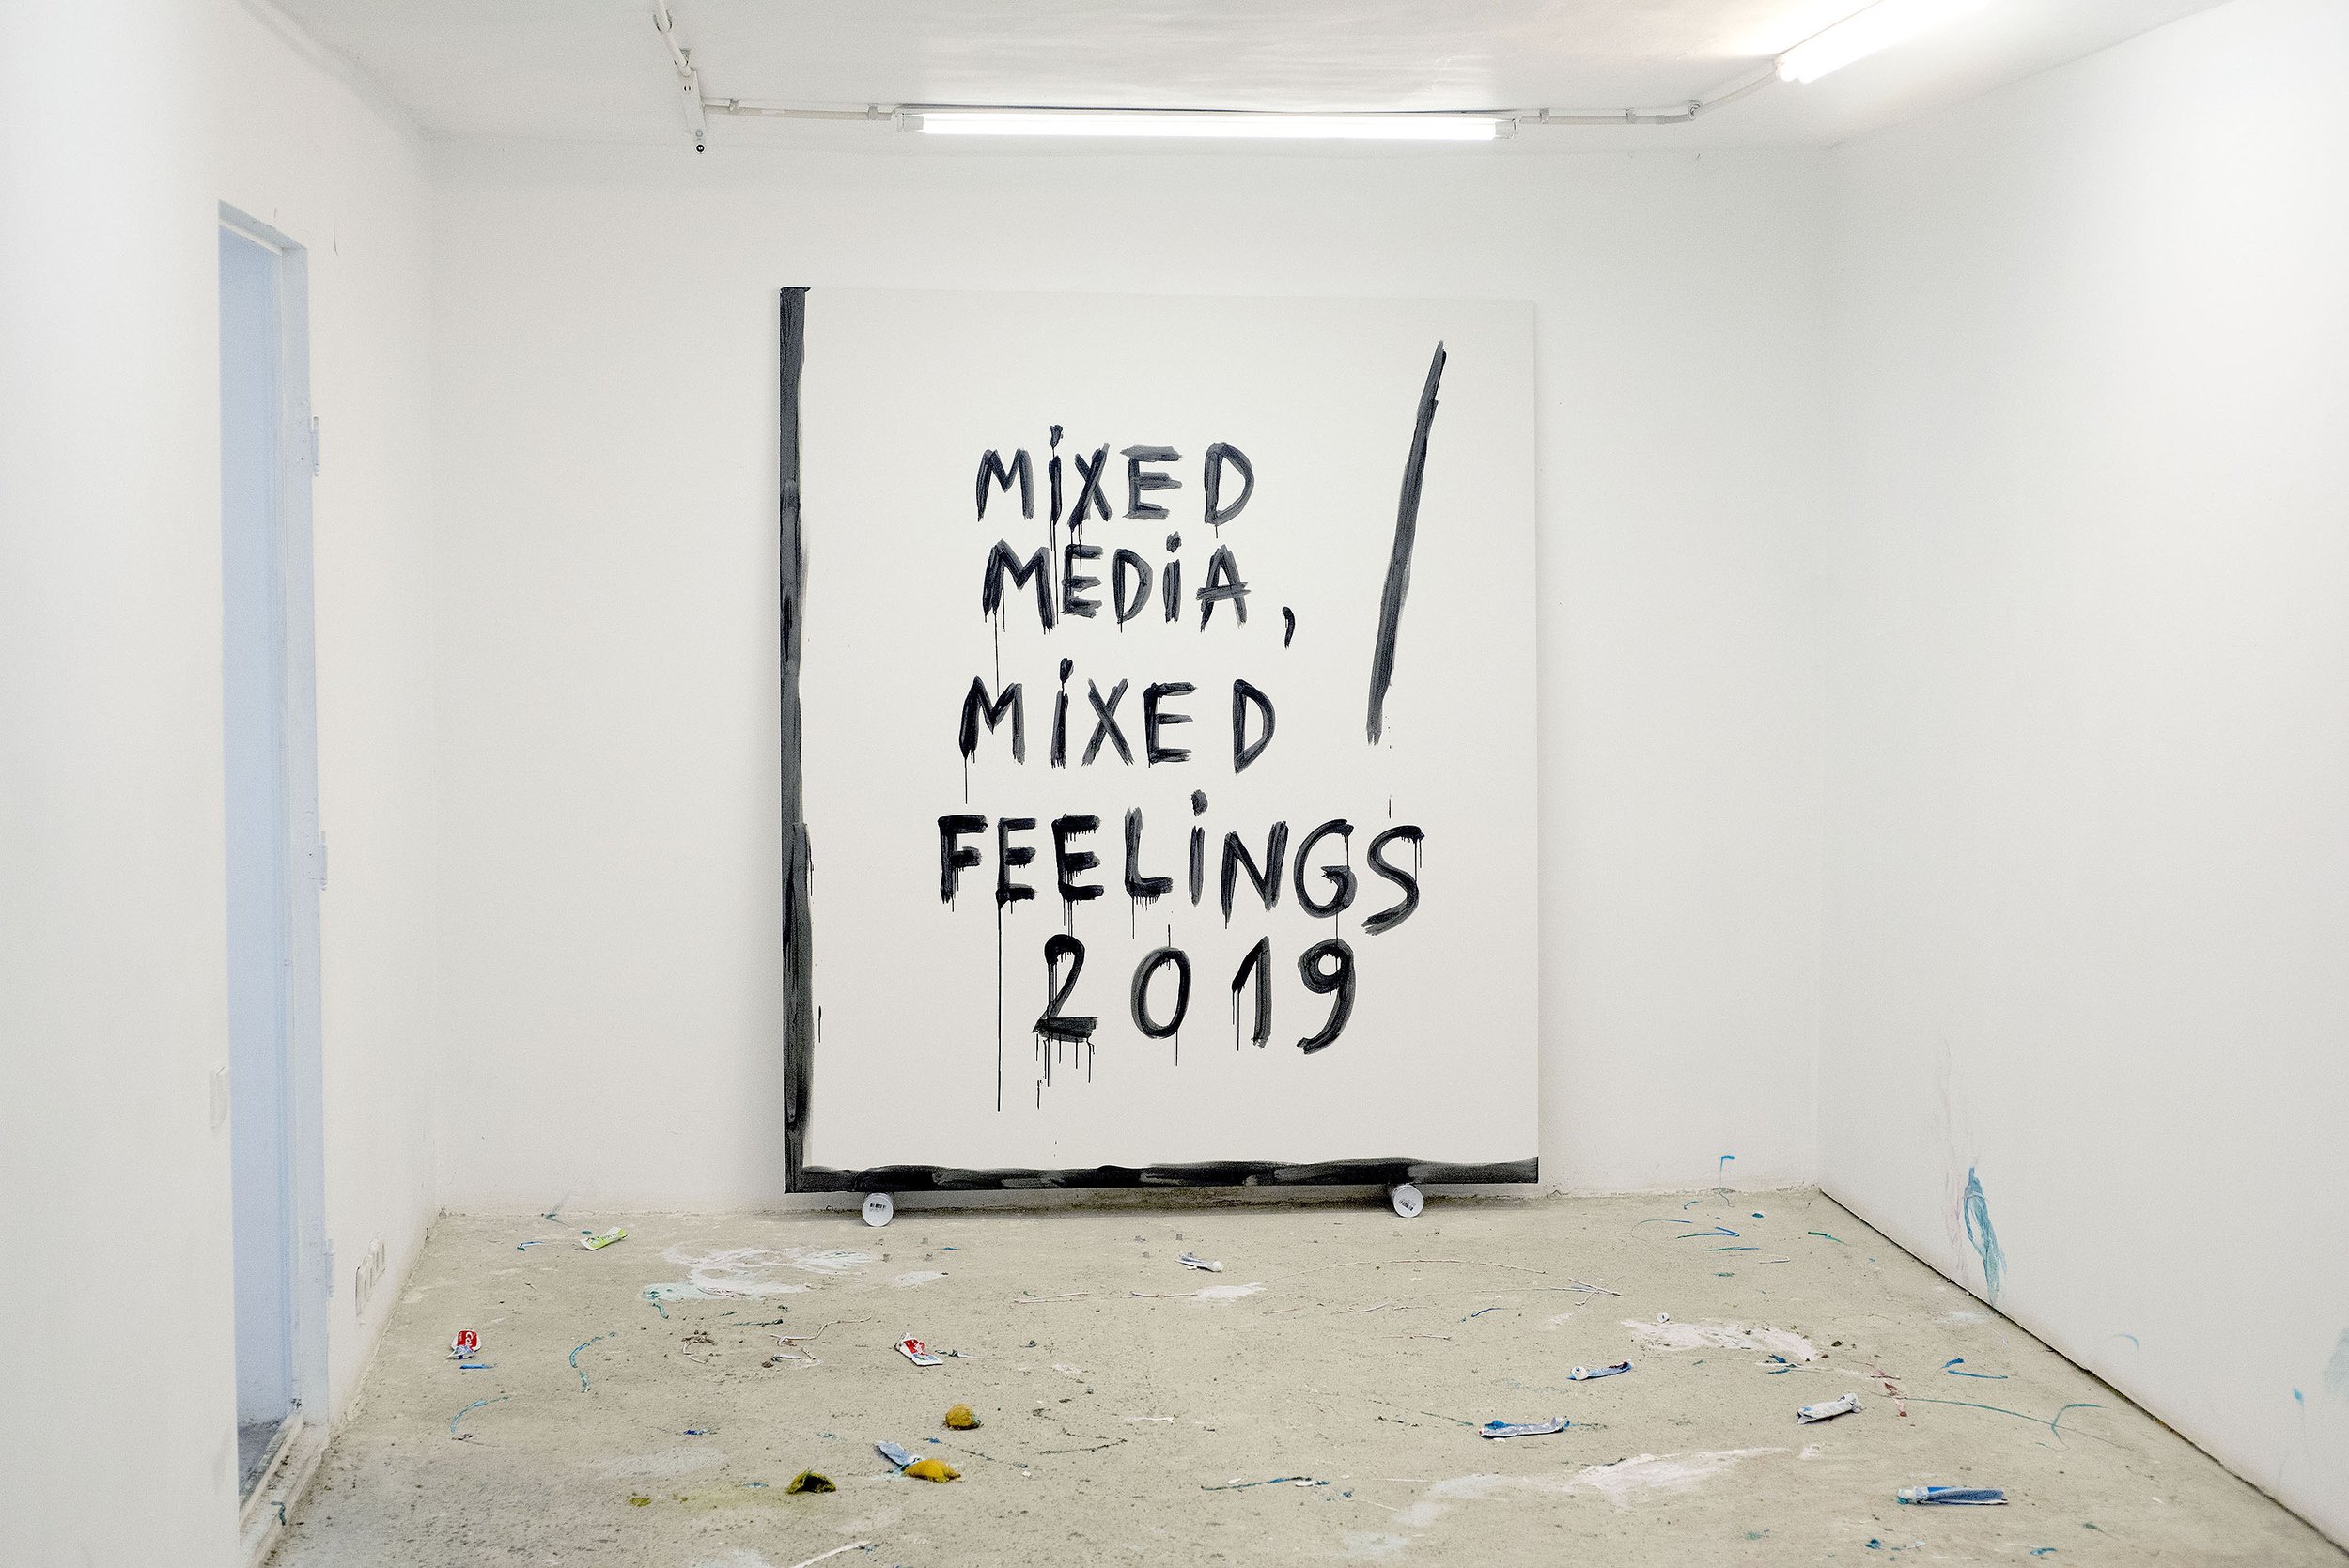 Mixed media, Mixed feelings, 2019